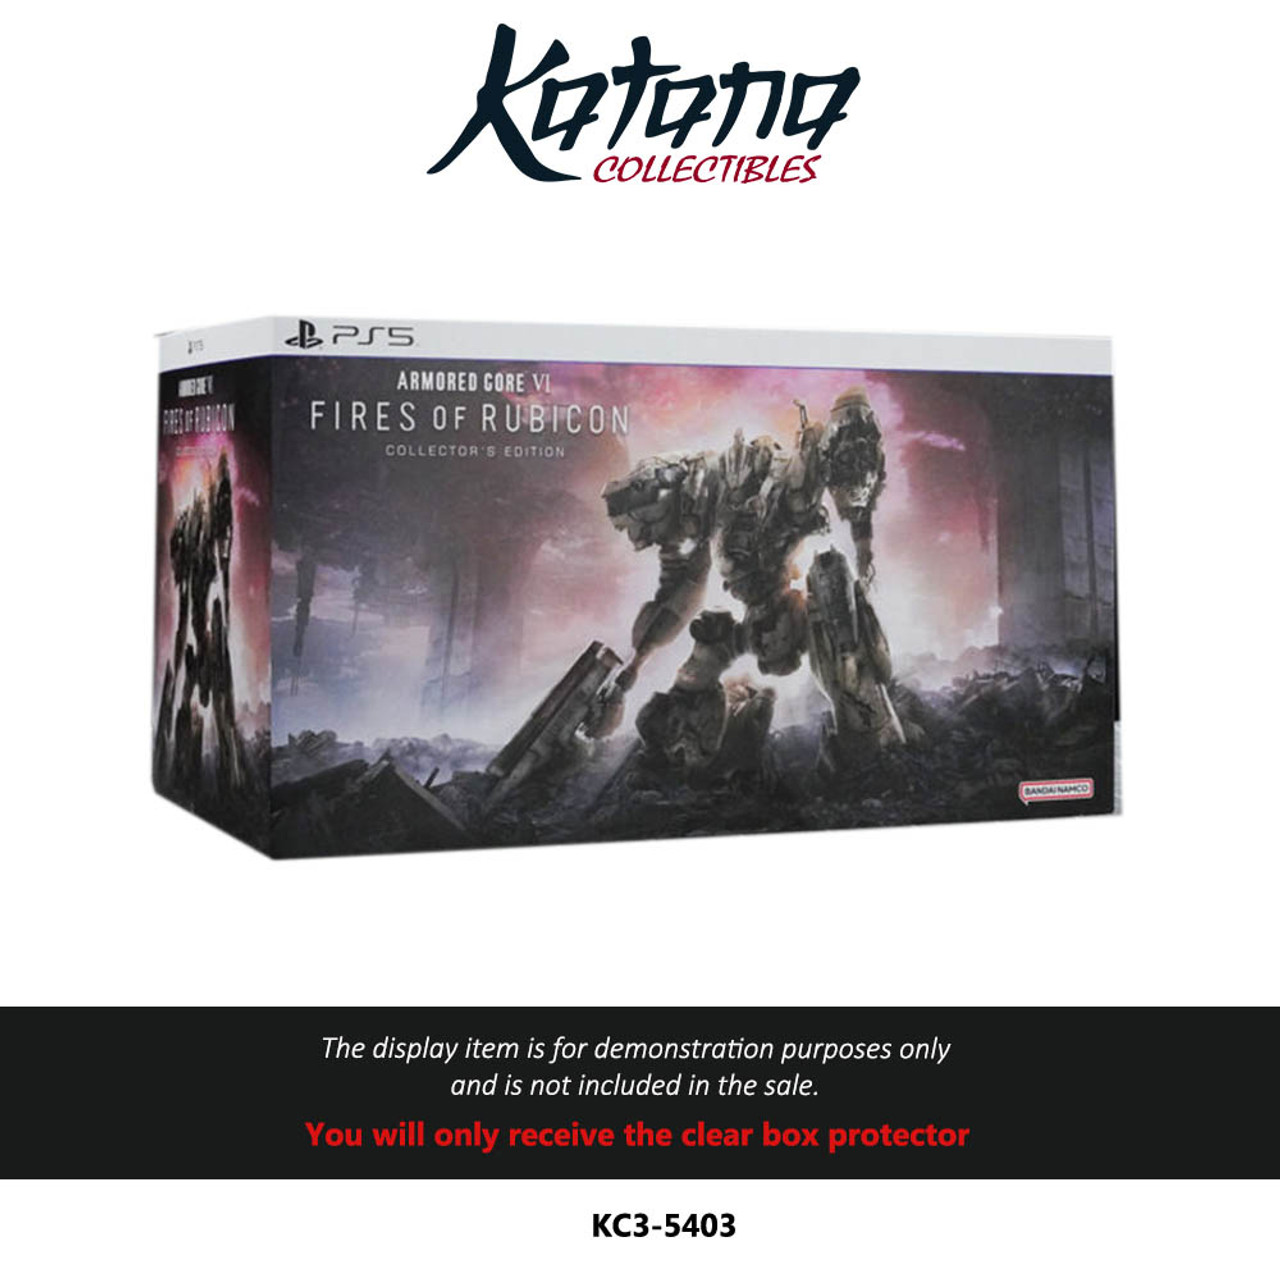 Katana Collectibles Protector For Armored Core VI Collector'S Edition